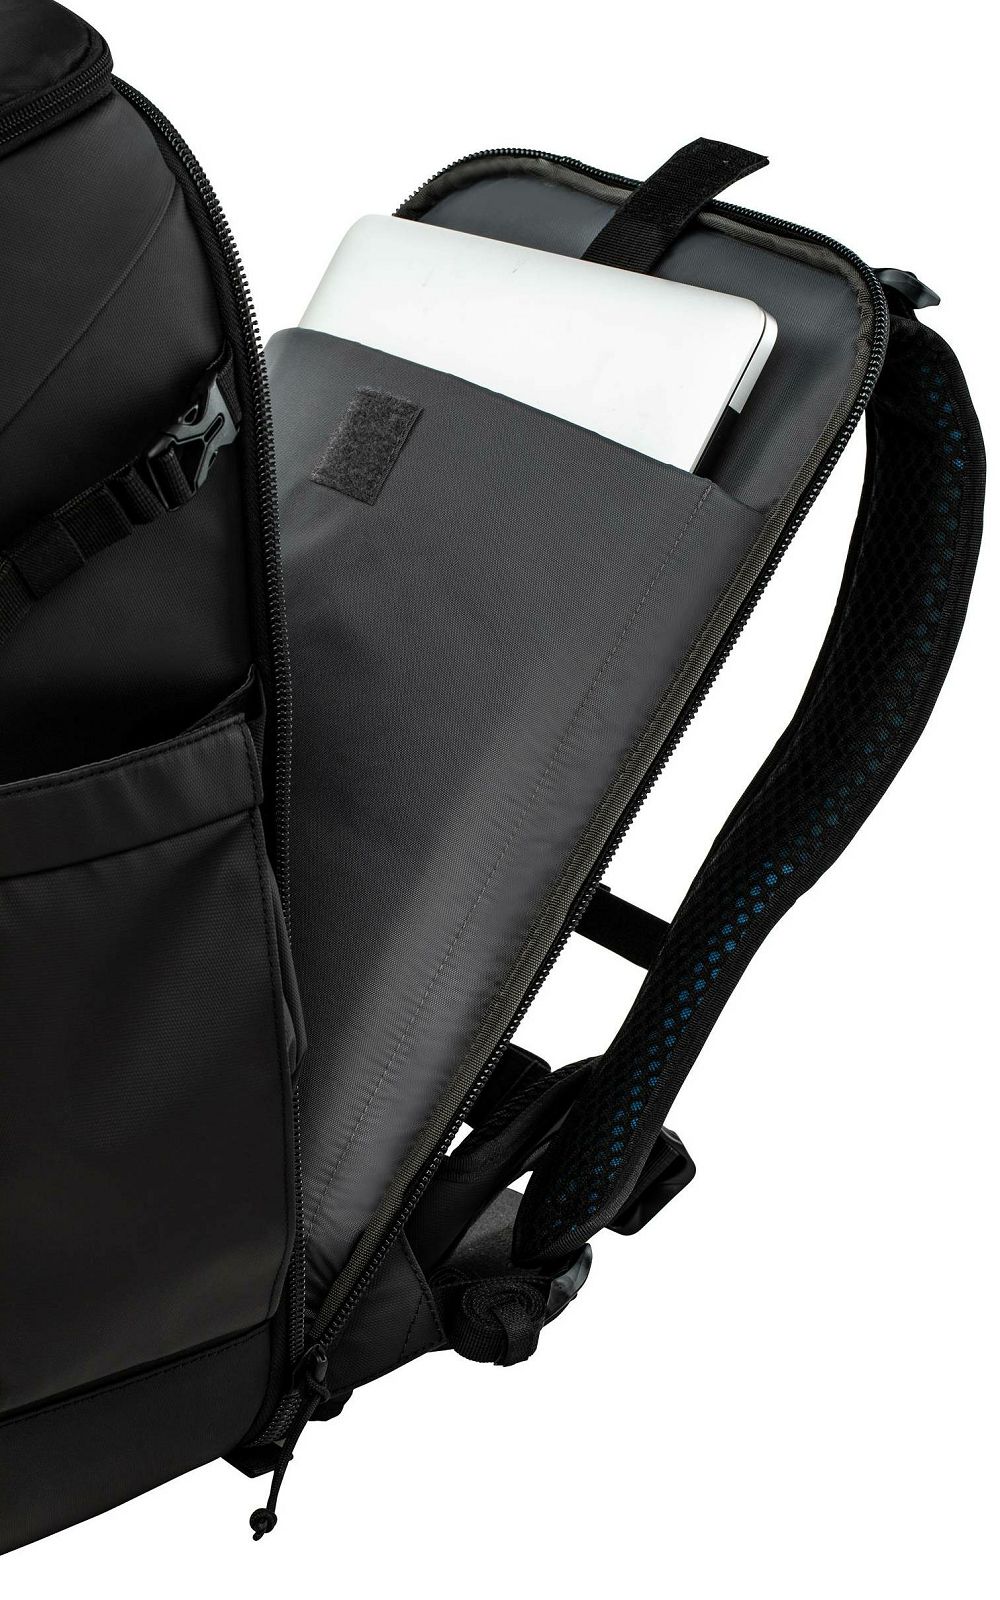 tenba-axis-tactical-24l-backpack-black-c-816779021241_6.jpg